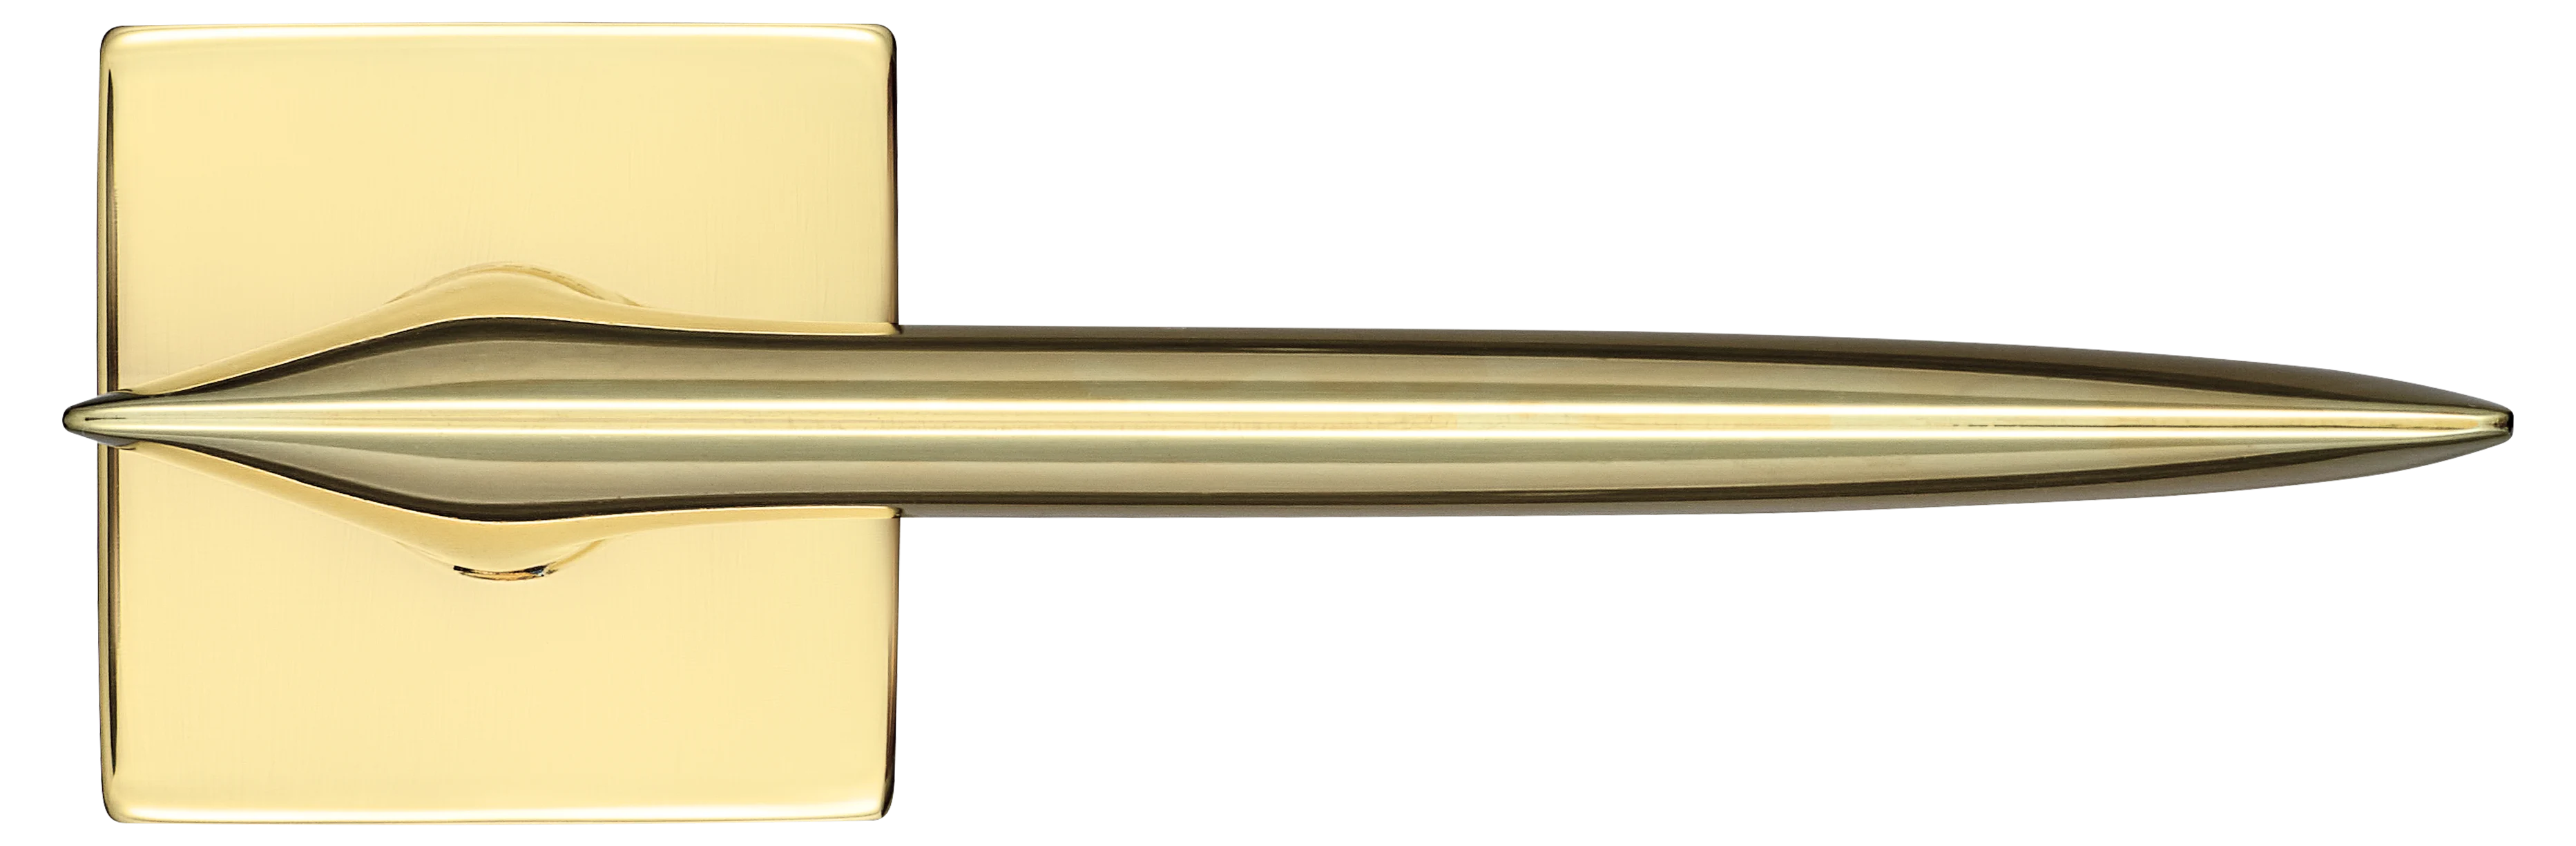 GALACTIC S5 OTL, ручка дверная, цвет -  золото фото купить в СПб